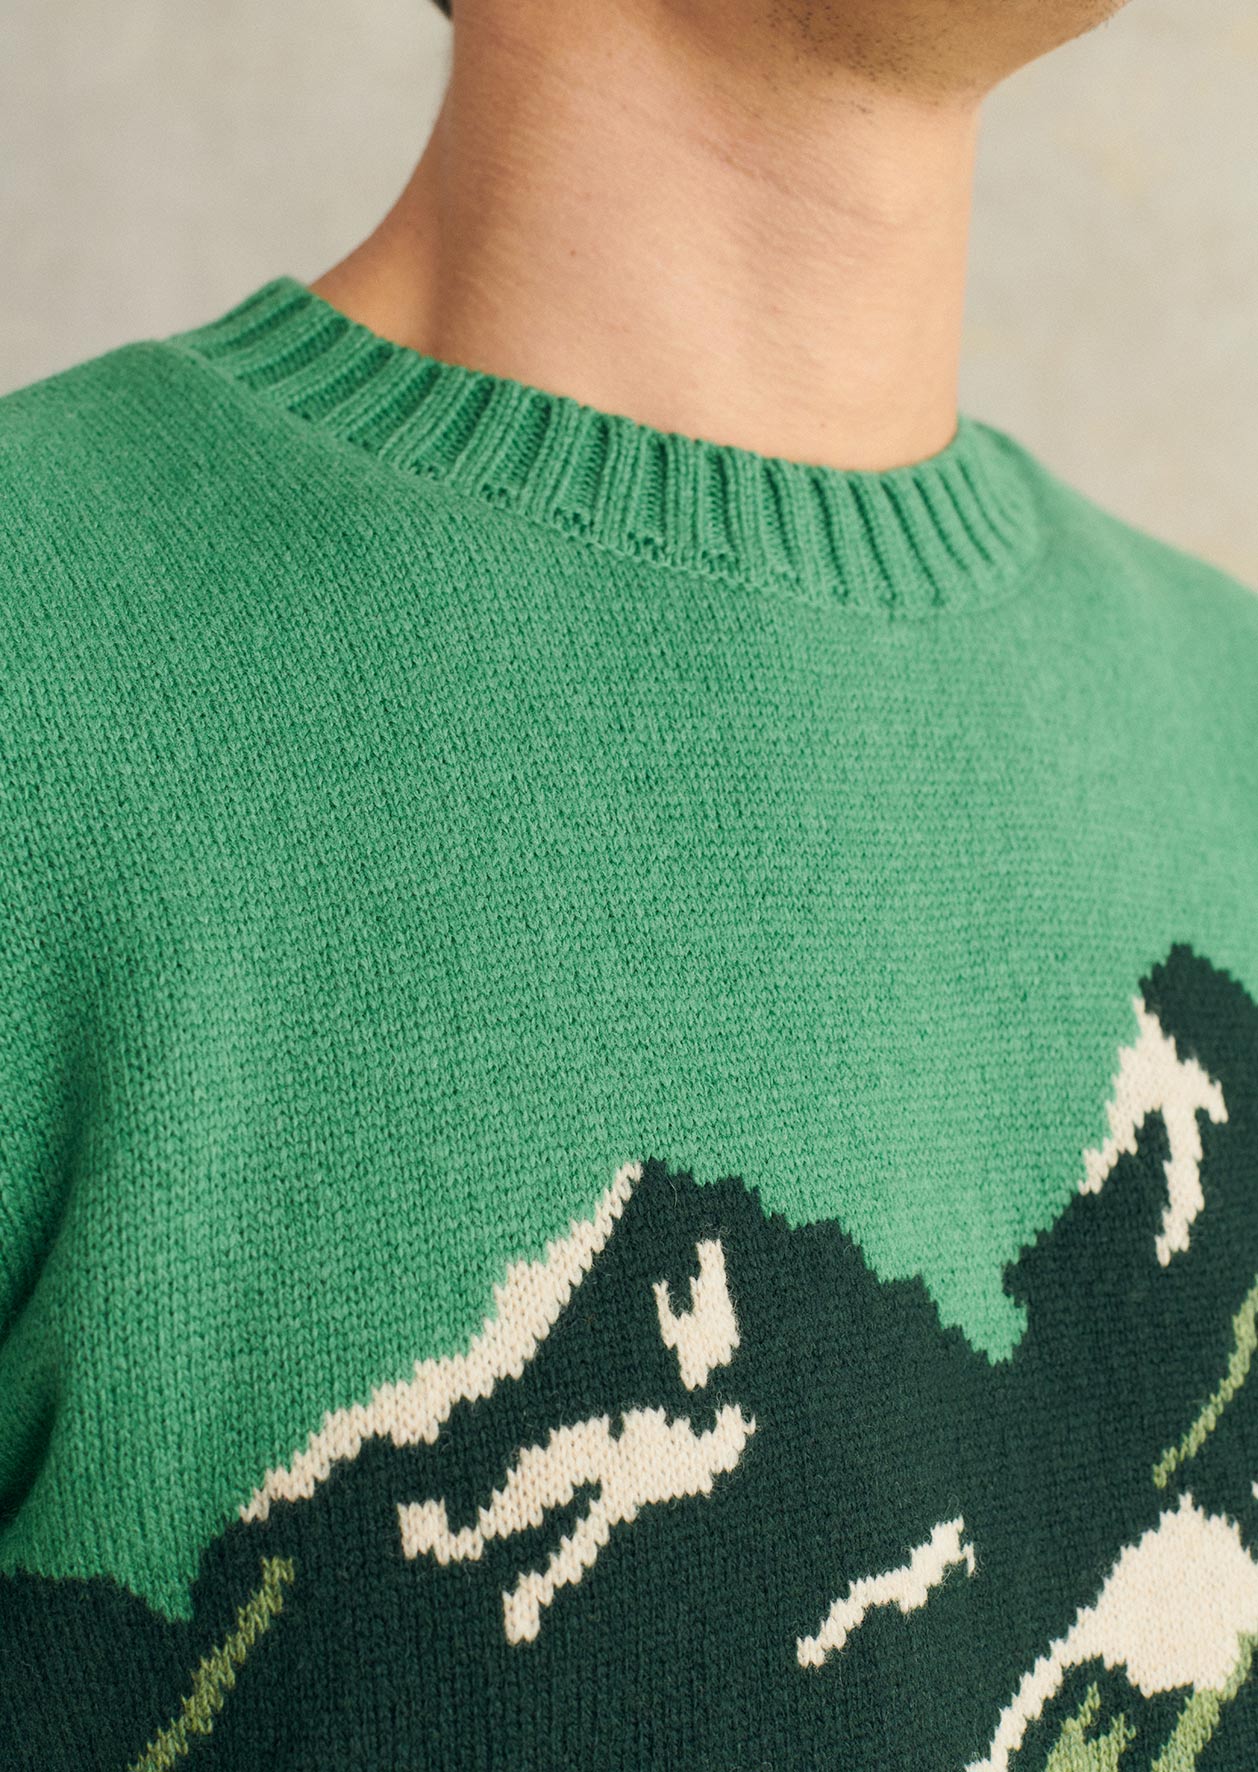 Jacquard Mountain Sweater